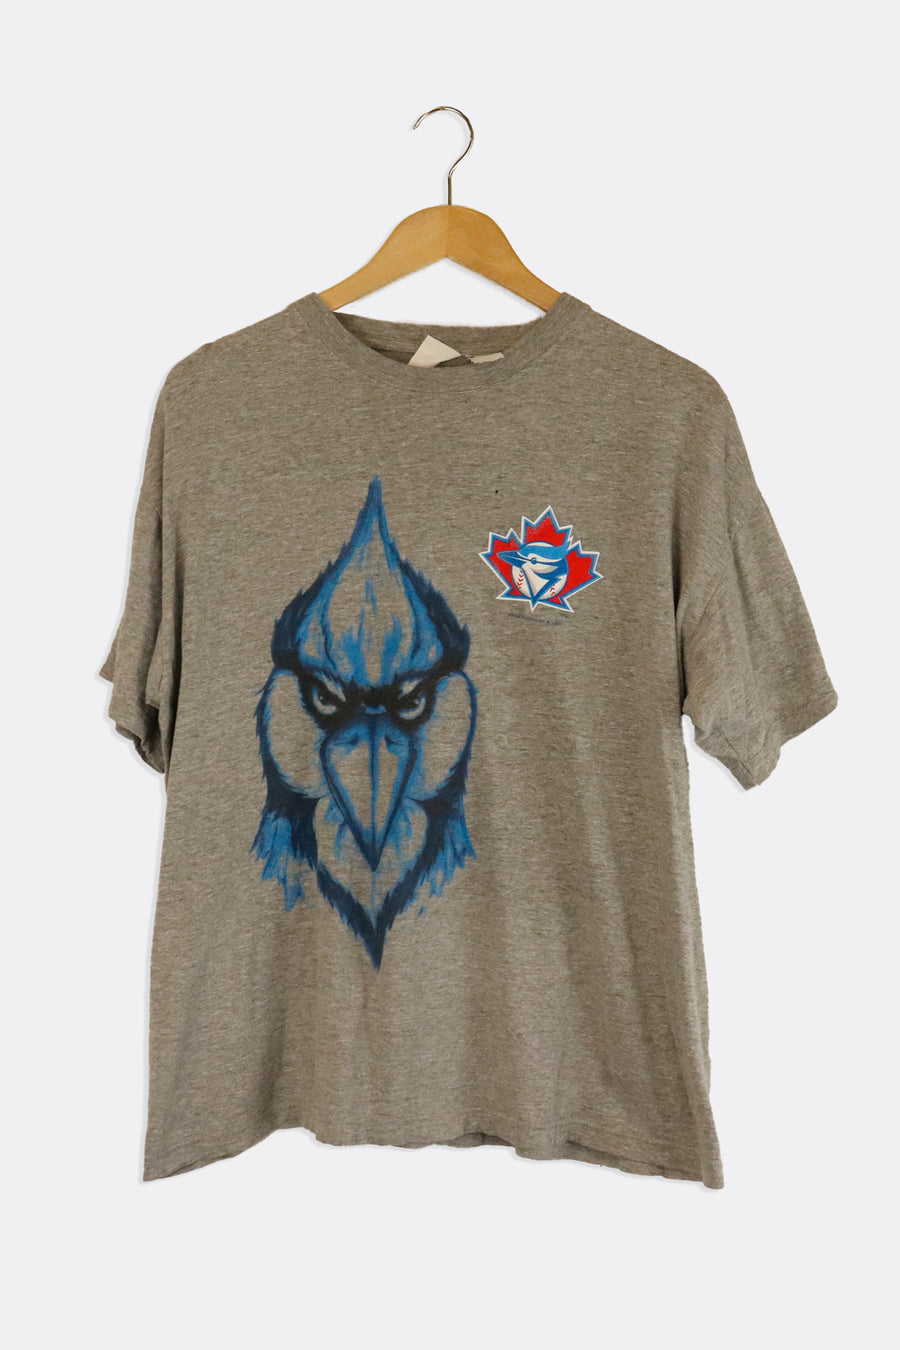 Vintage 1998 Toronto Blue Jays Bird And Logo T Shirt Sz L